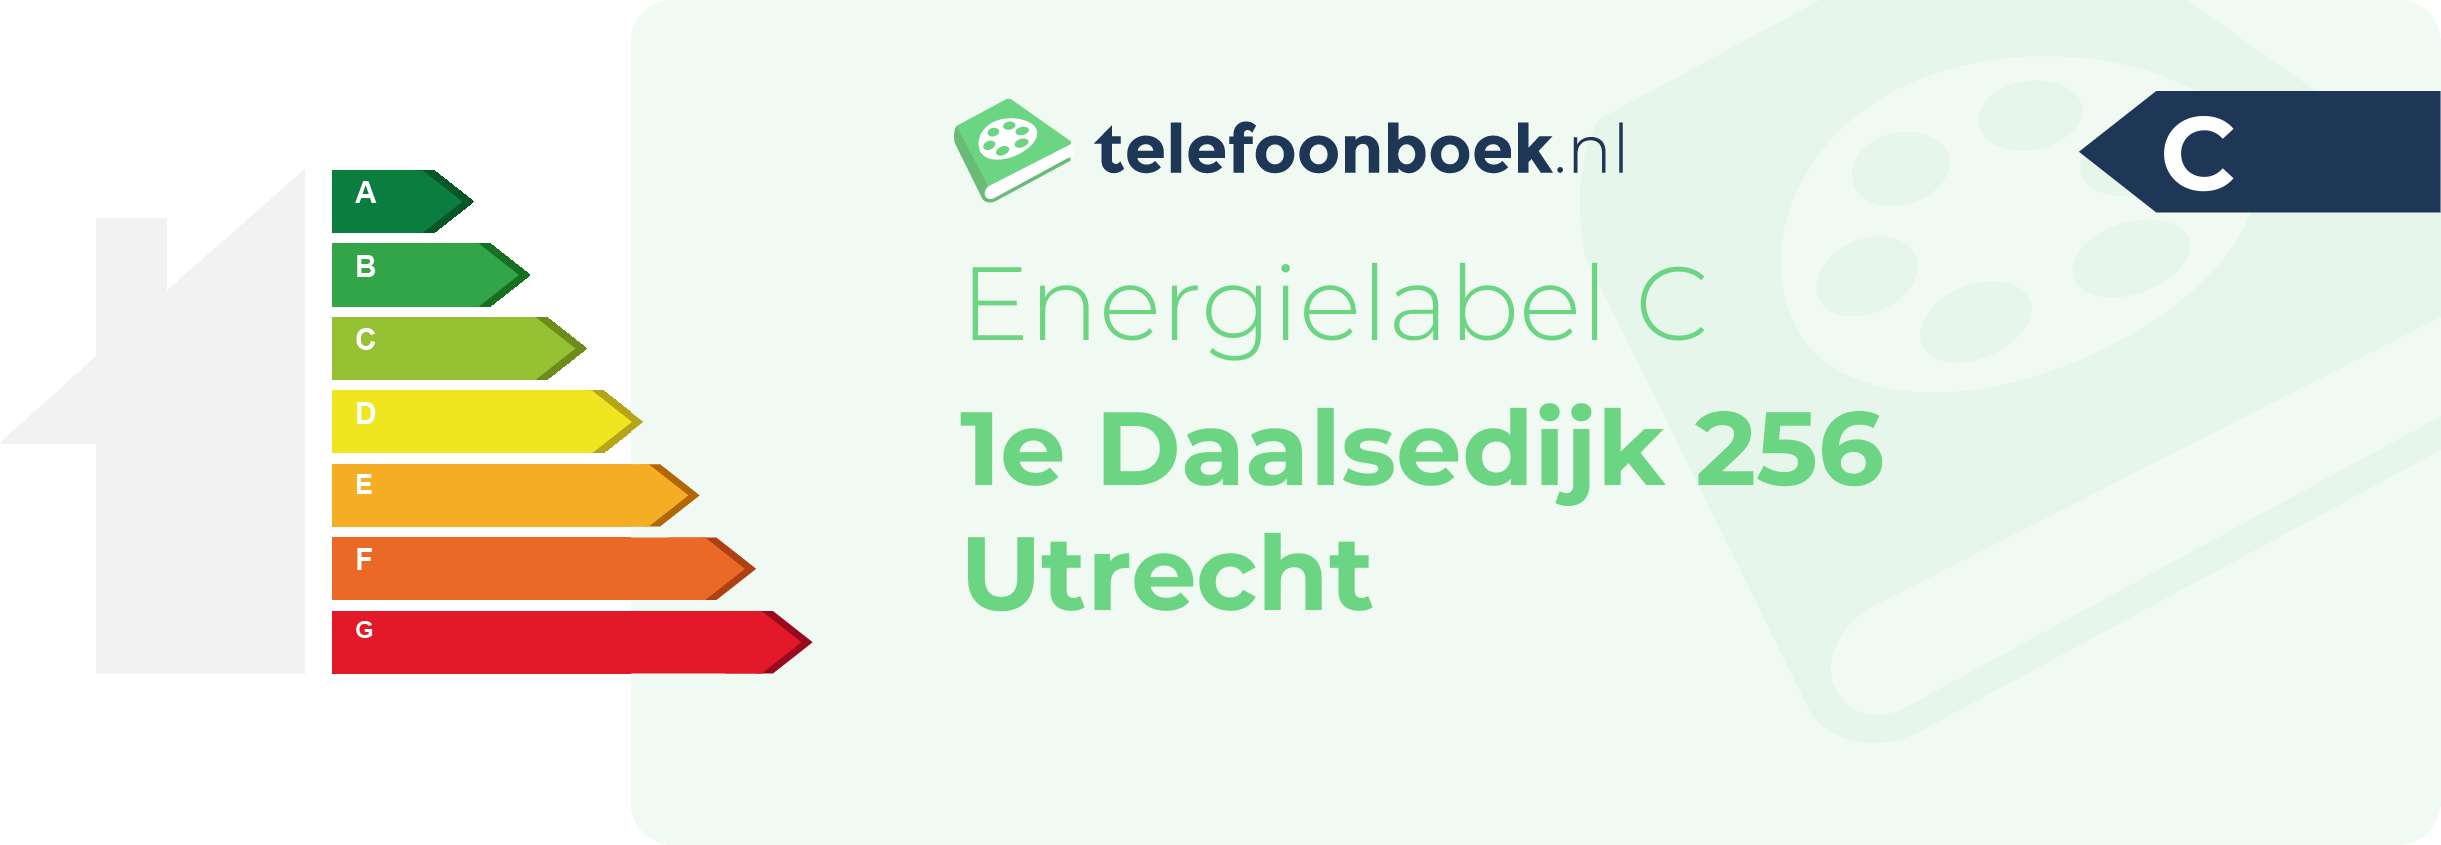 Energielabel 1e Daalsedijk 256 Utrecht